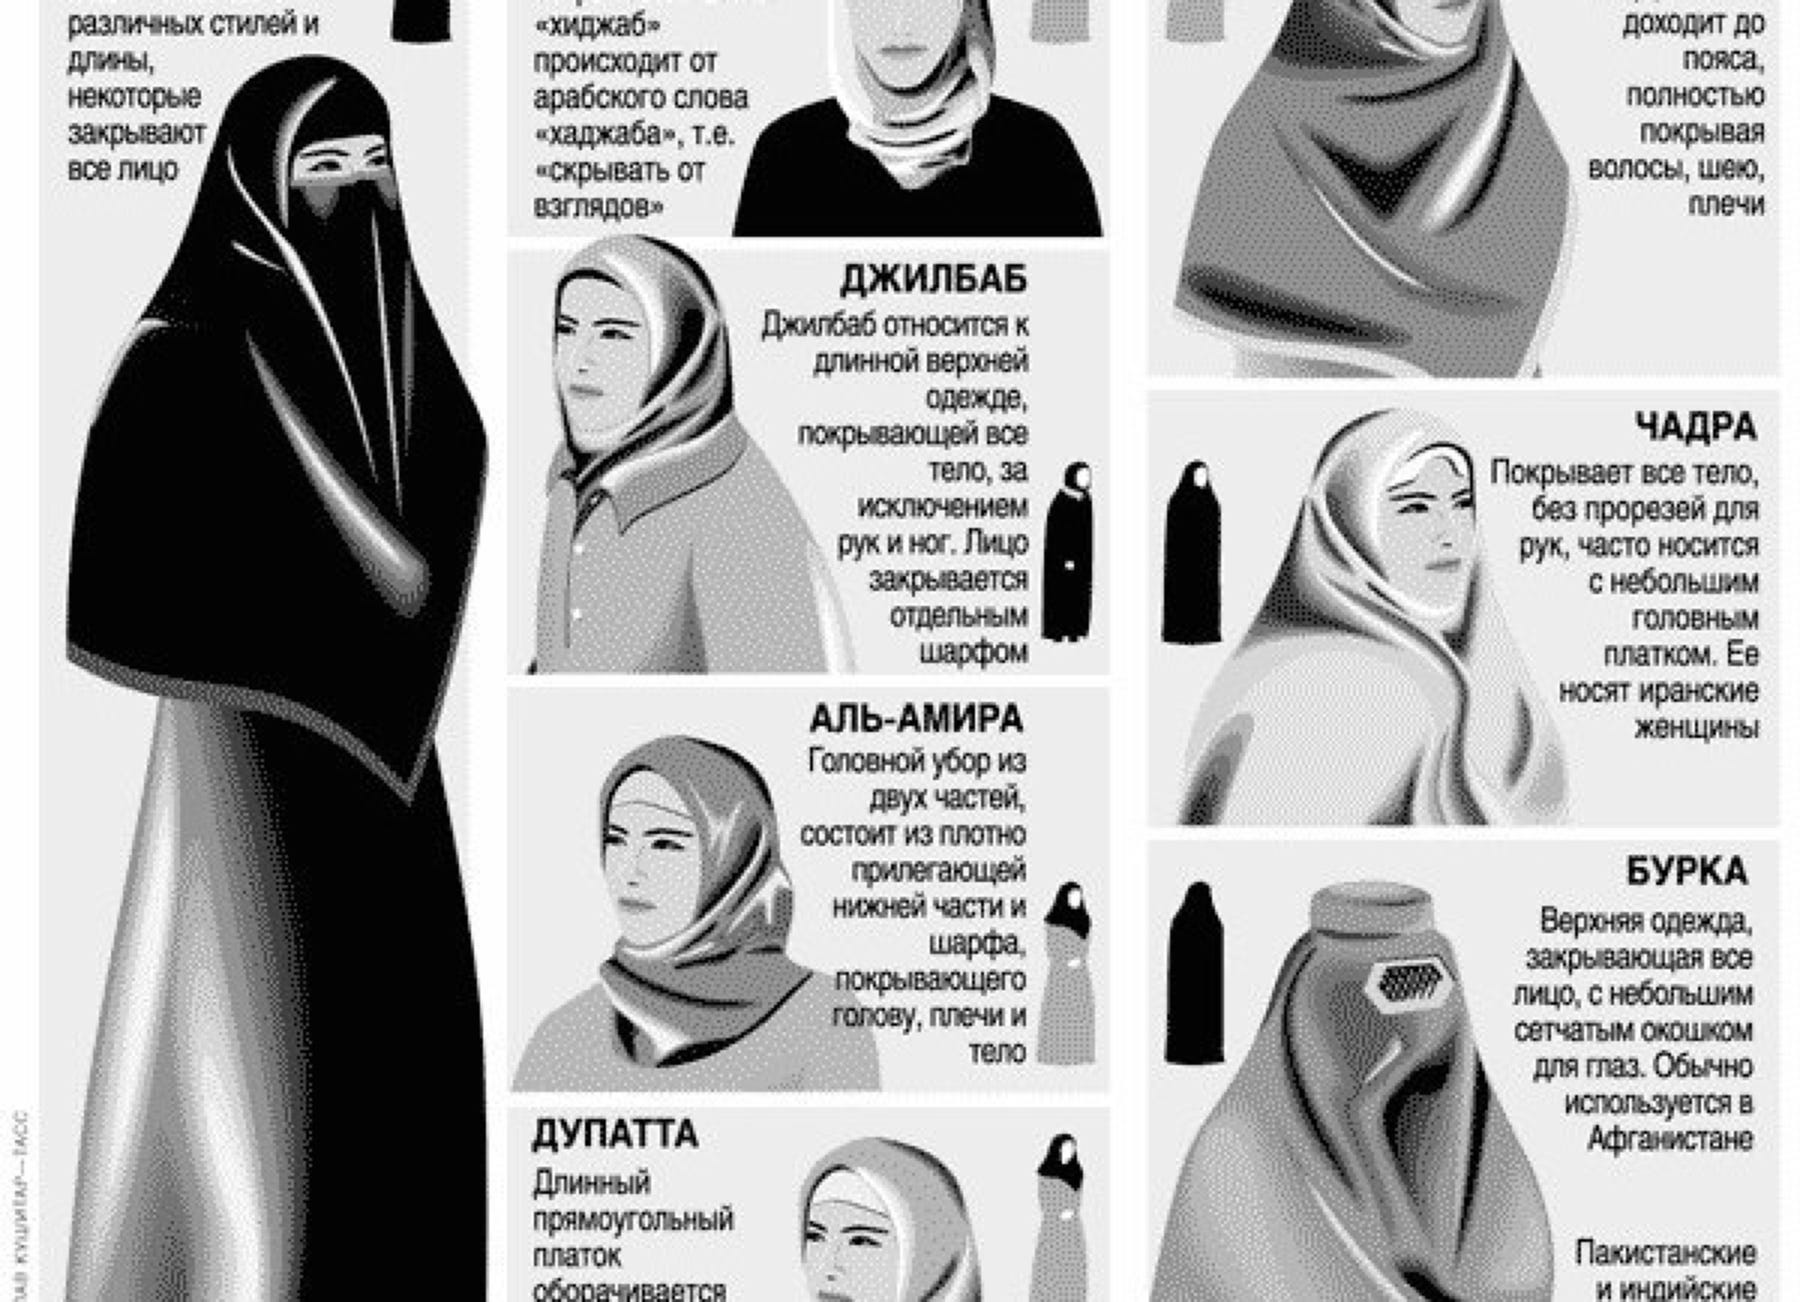 Как правильно называть женщин. Бурка паранджа никаб. Никаб хиджаб паранджа. Хиджаб паранджа чадра никаб отличия. Бурка хиджаб никаб паранджа.